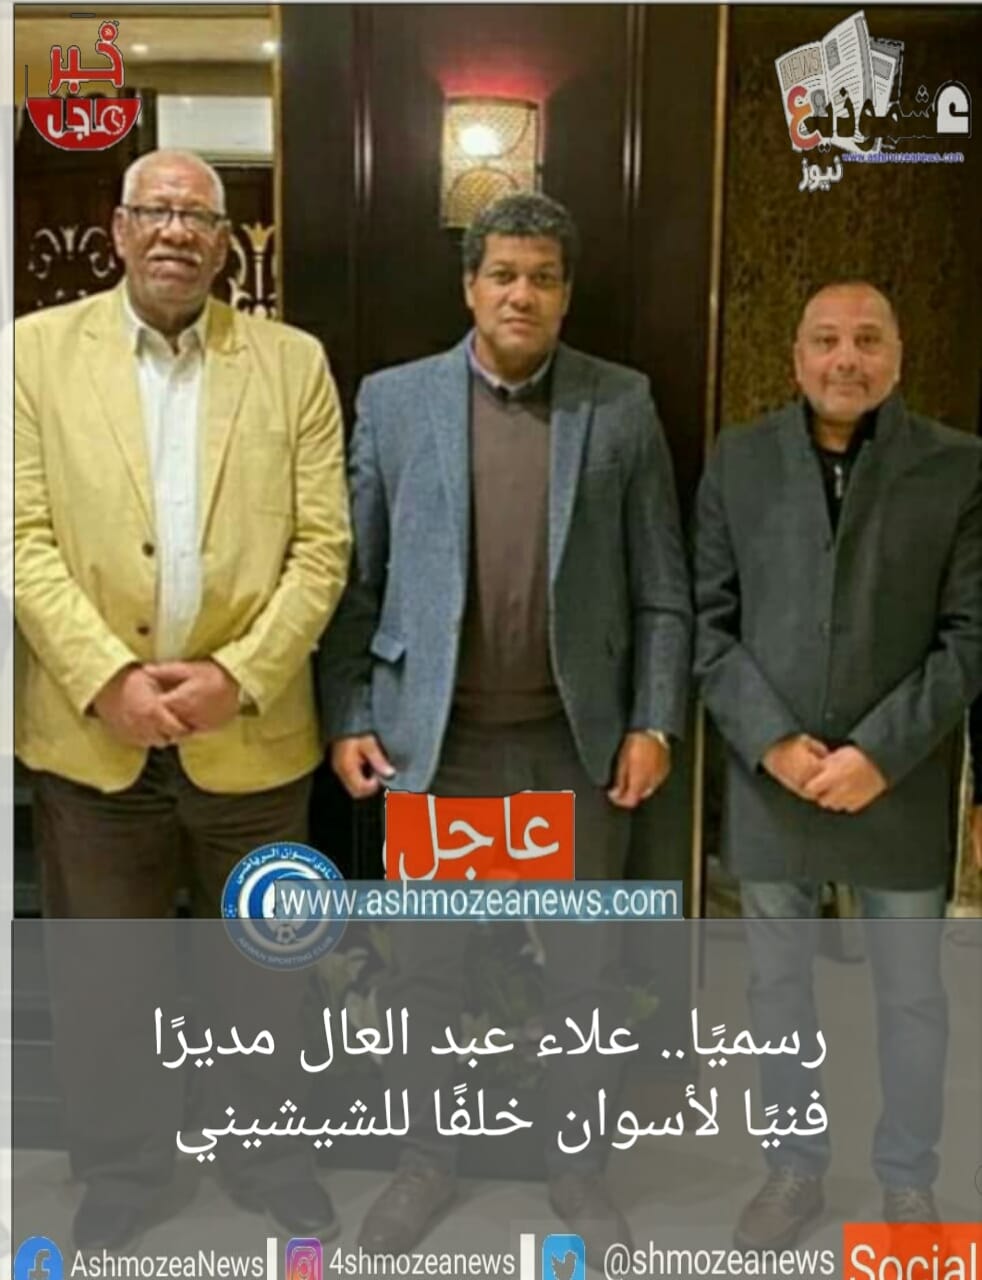 رسميًا.. علاء عبد العال مديرًا فنيًا لأسوان خلفًا للشيشيني